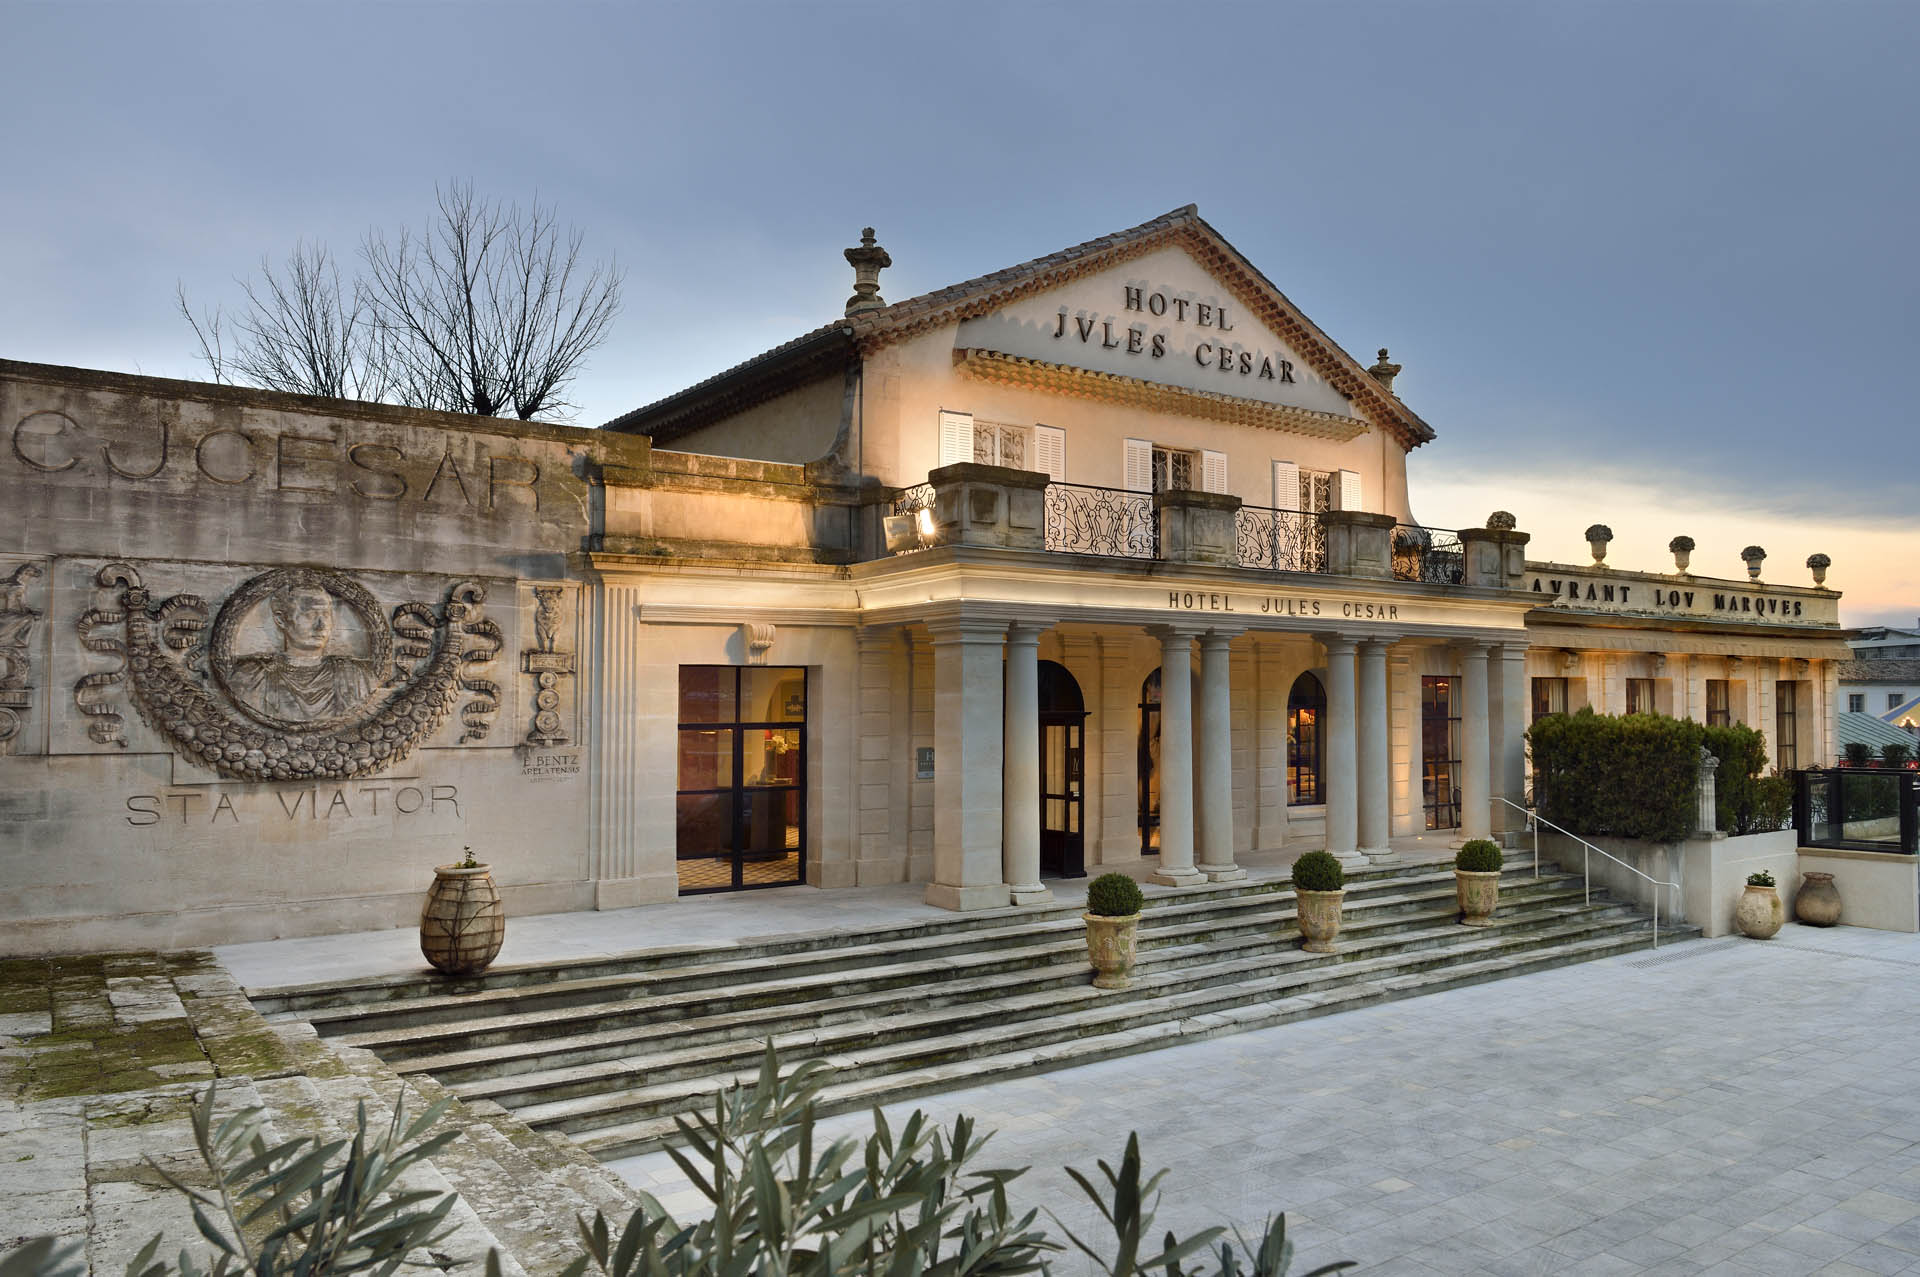 Découvrez l’Hôtel Jules César, hôtel de caractère signé Christian Lacroix, lors d’un séjour ensoleillé au cœur d’Arles !